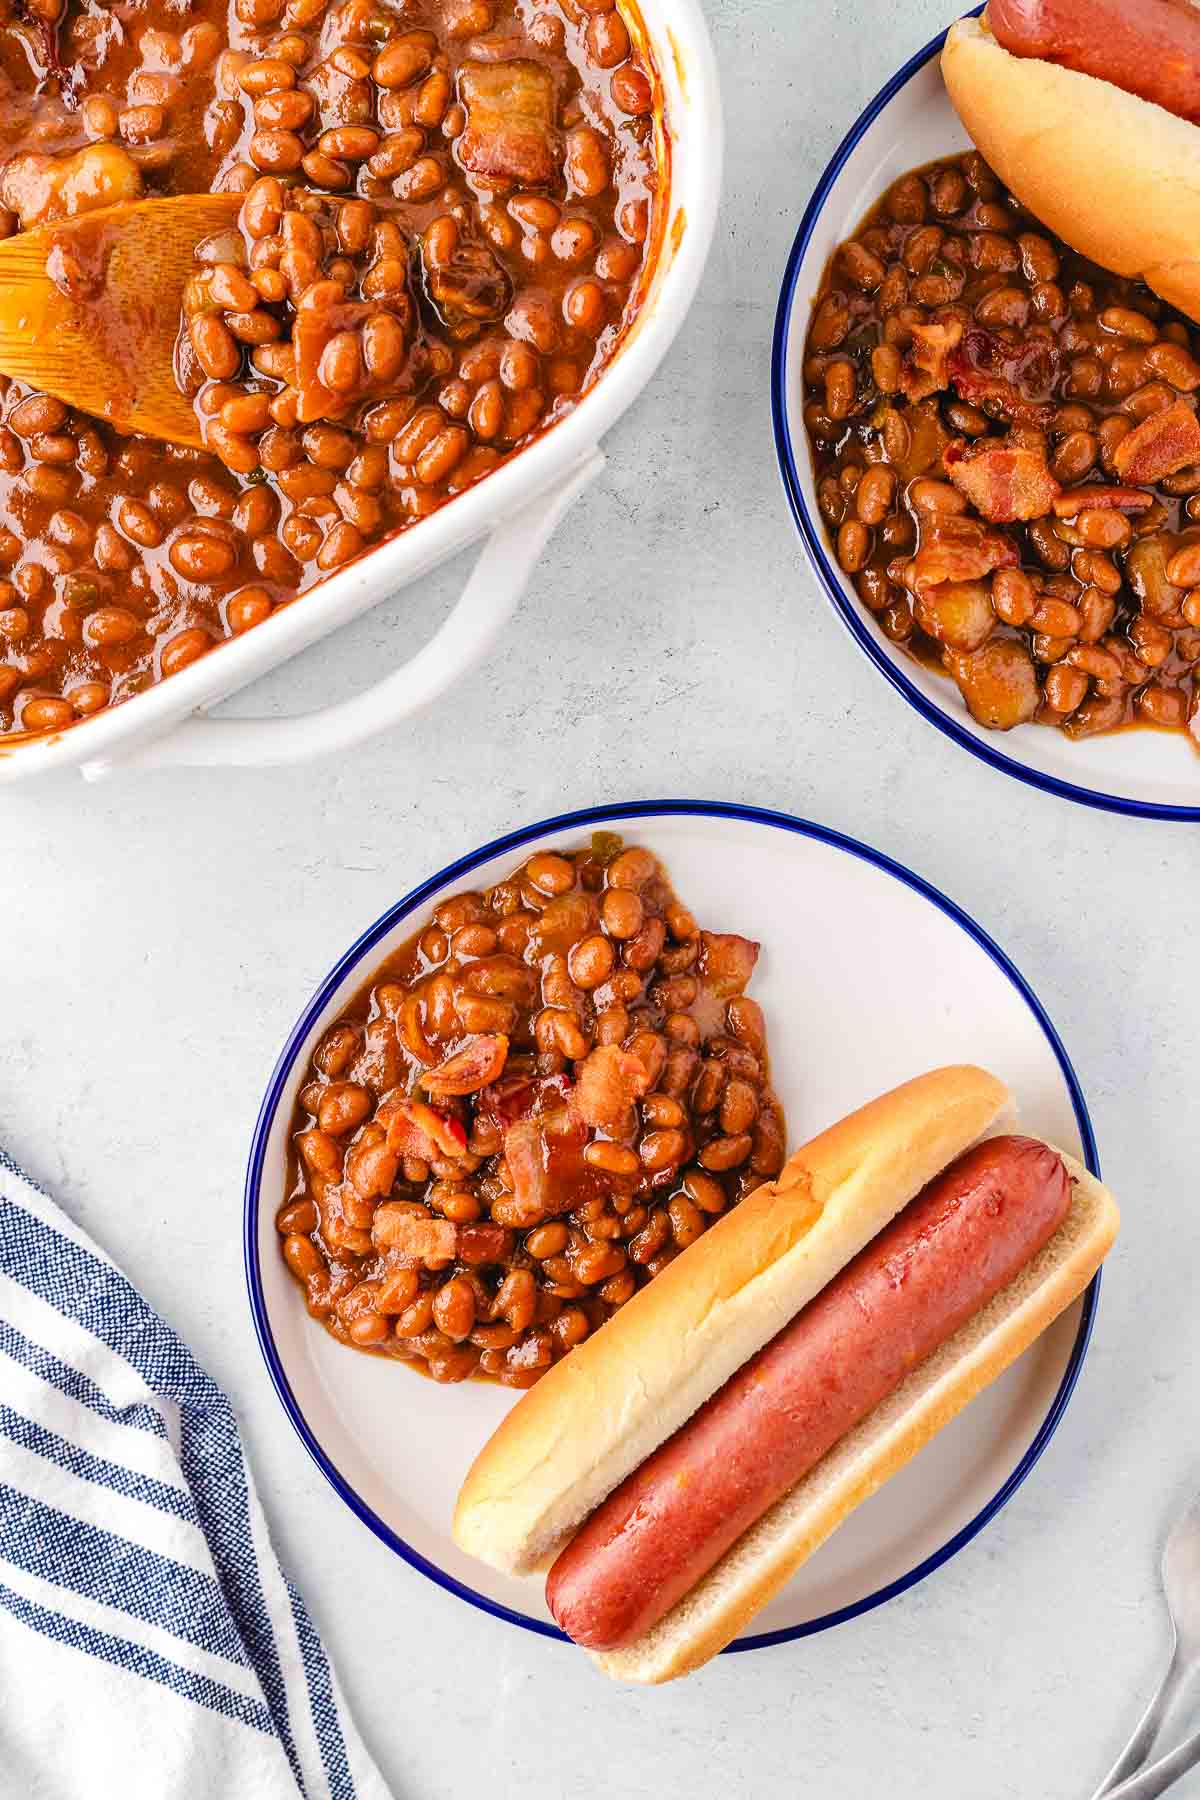 A plate with a hot dog in a bun and a side of baked beans.